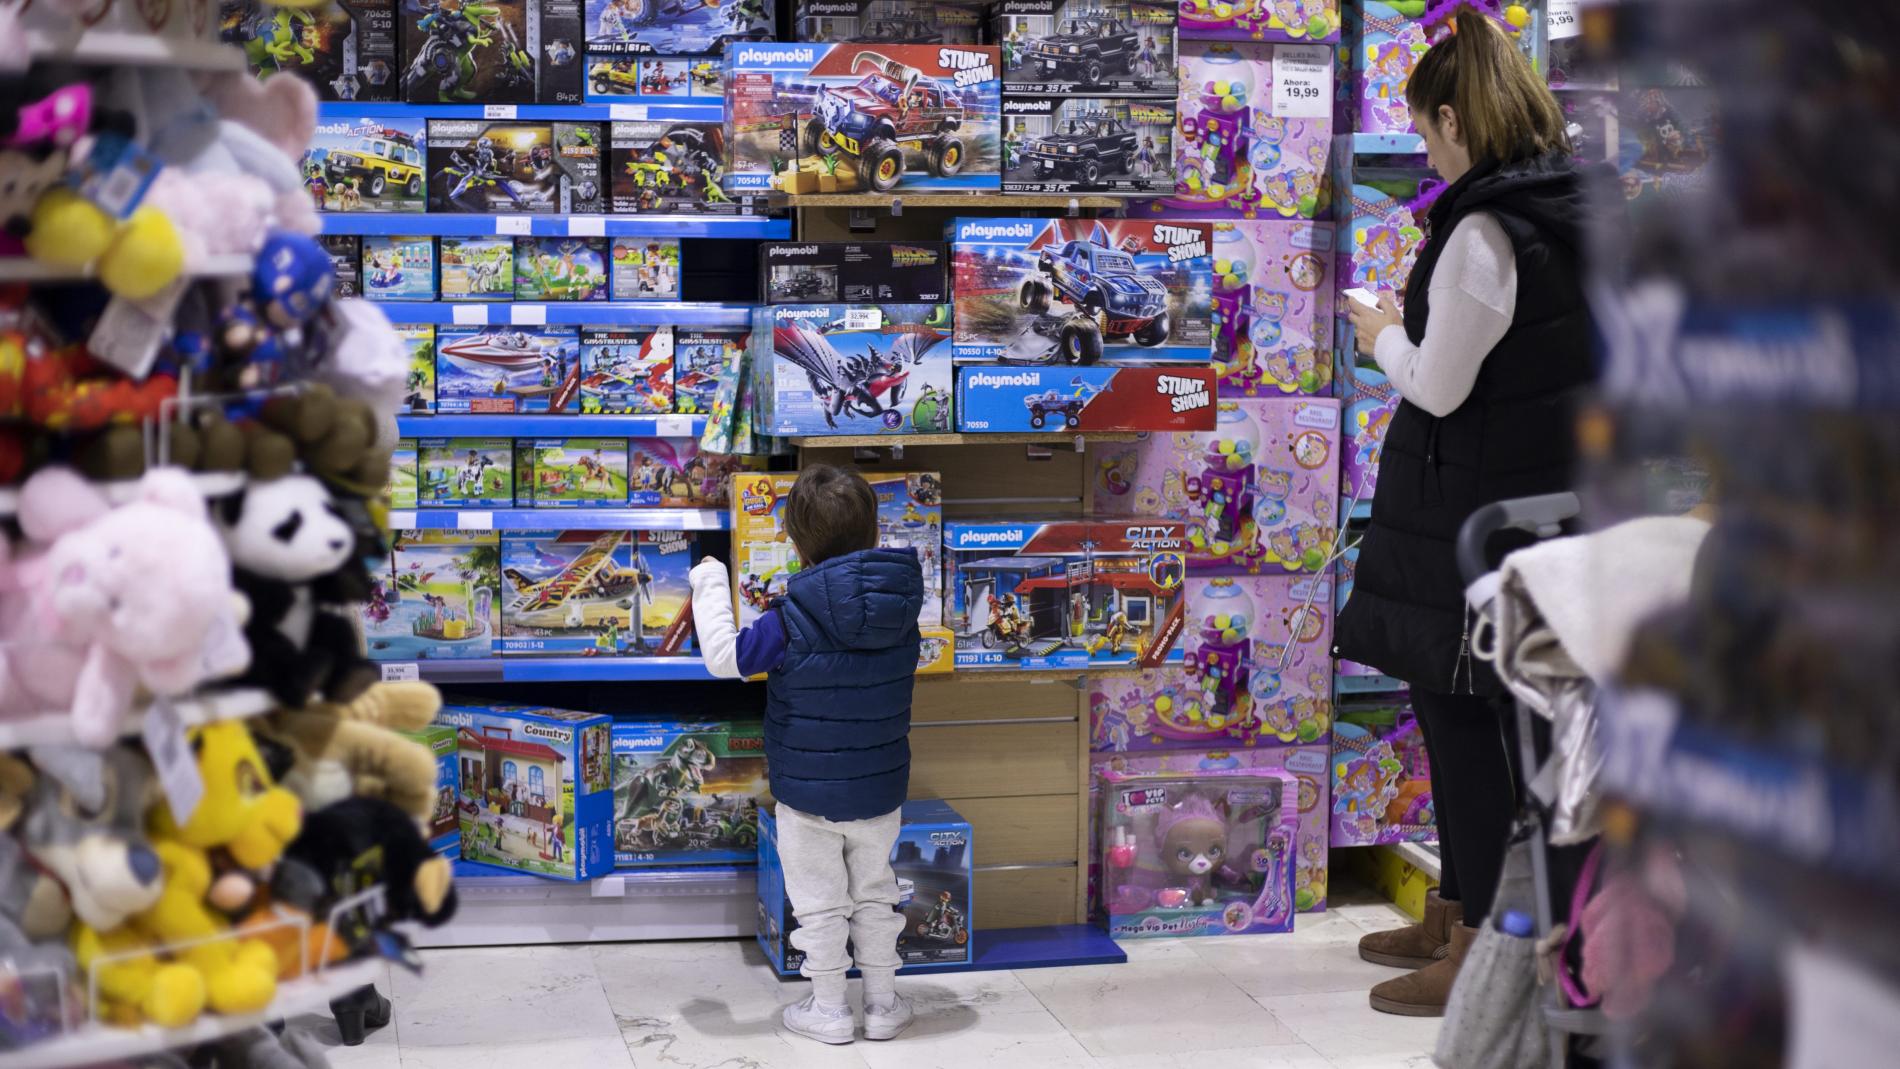 Uno - Mattel - Comprar en Abracadabra Juguetes